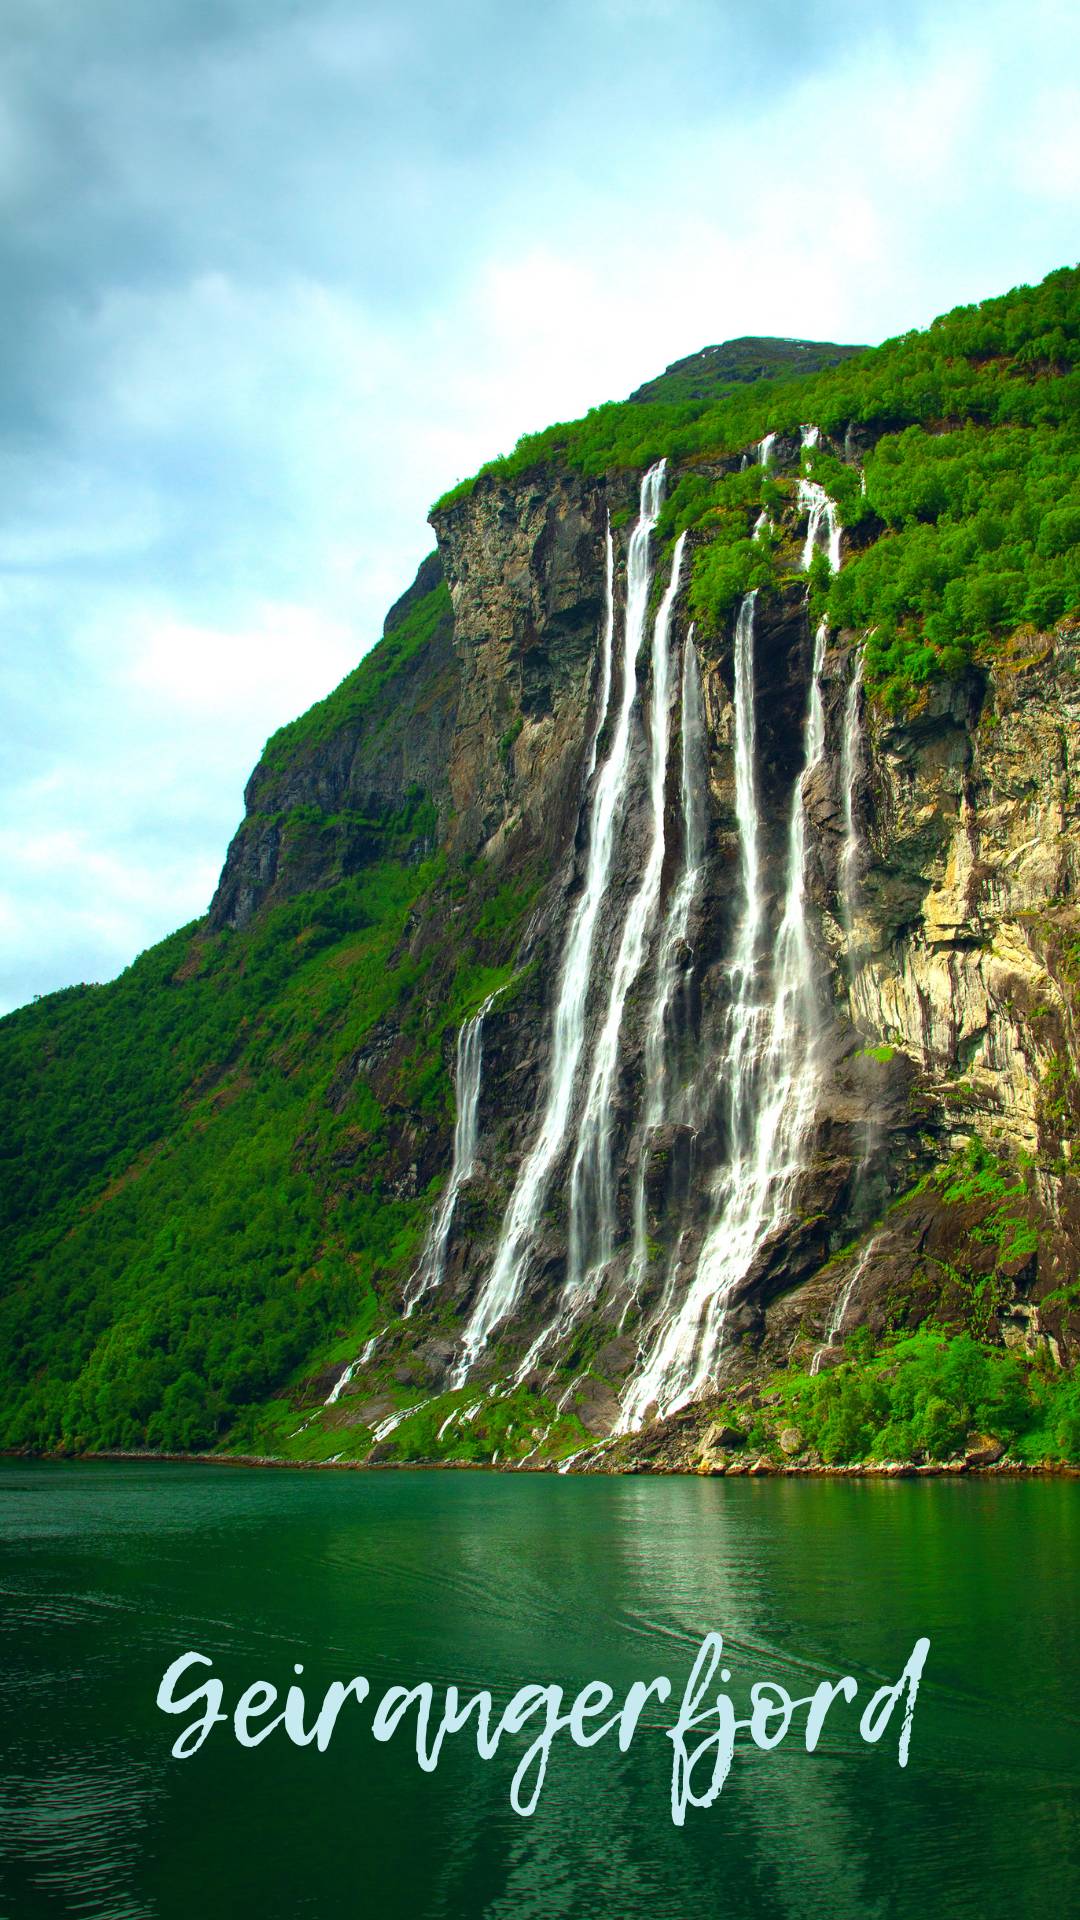 Seven Sisters waterfall in Norway’s Geirangerfjord.